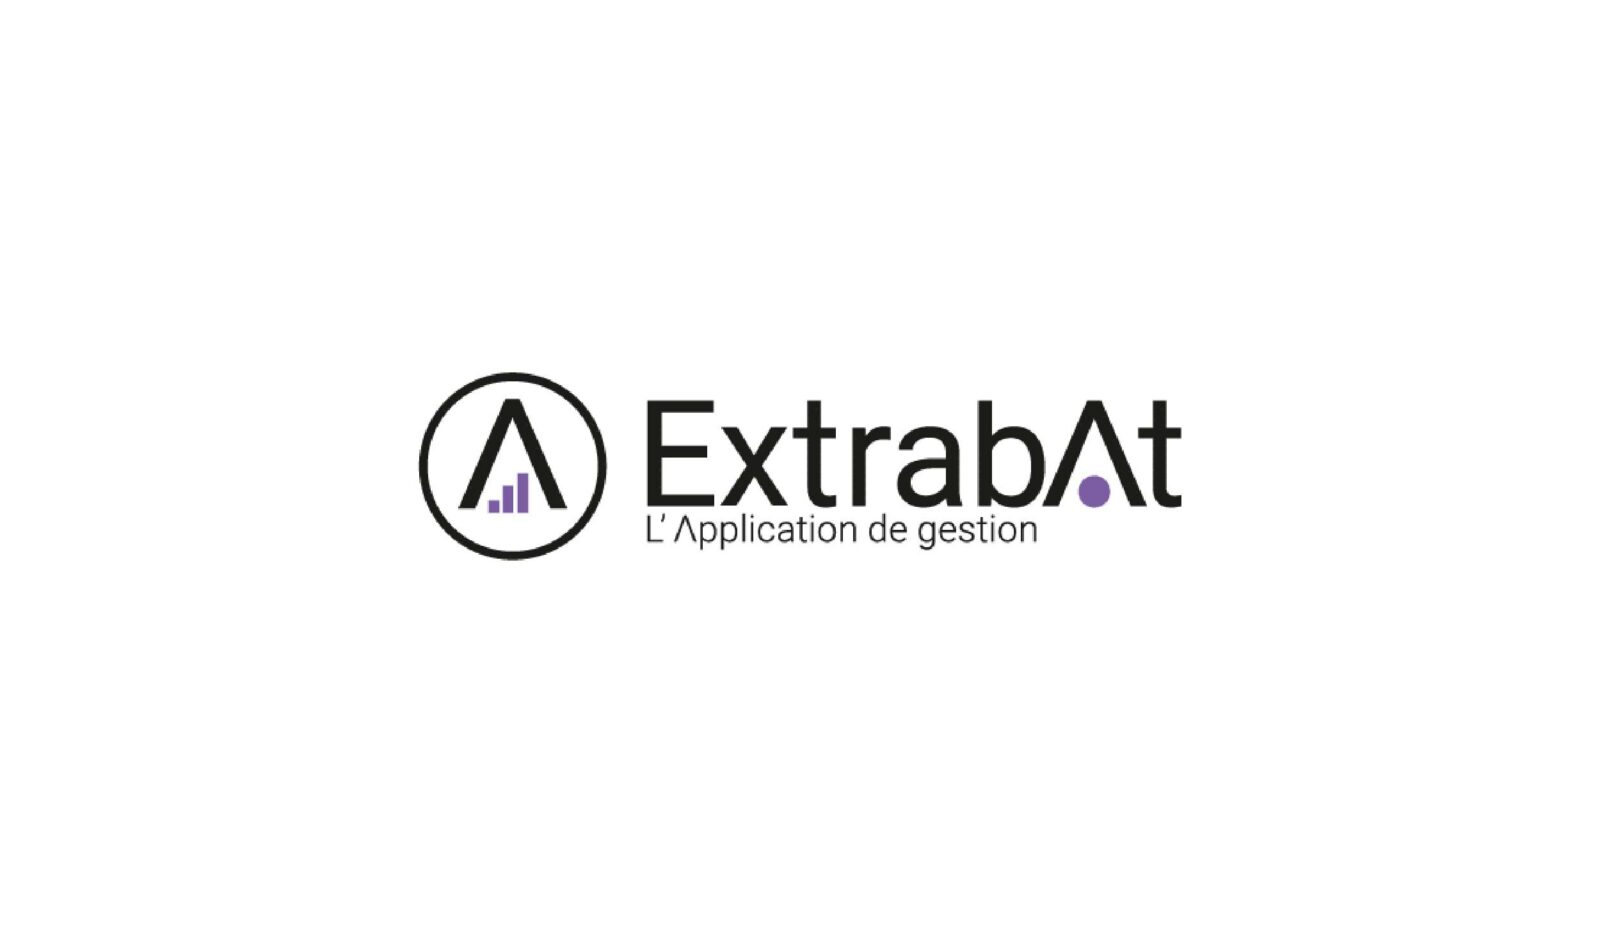 https://www.ccifrance-allemagne.fr/wp-content/uploads/2021/06/extrabat-logo-scaled.jpg